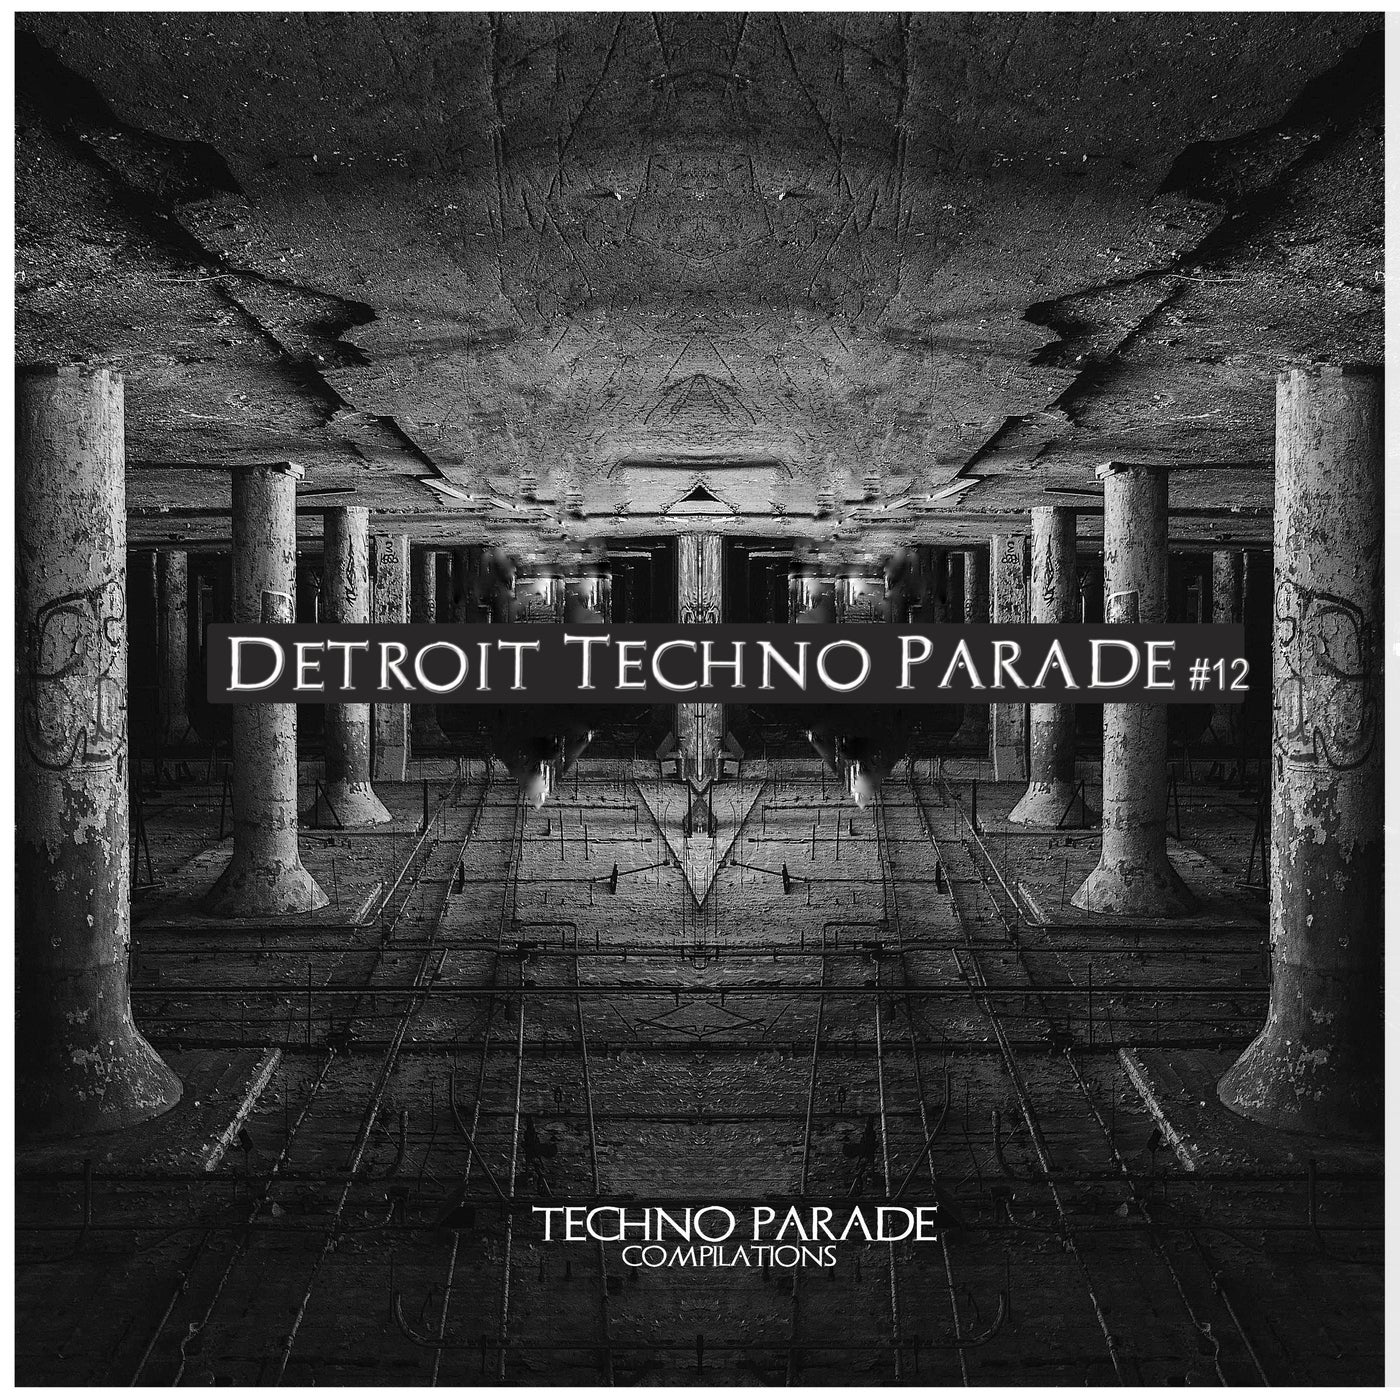 Detroit Techno Parade #12